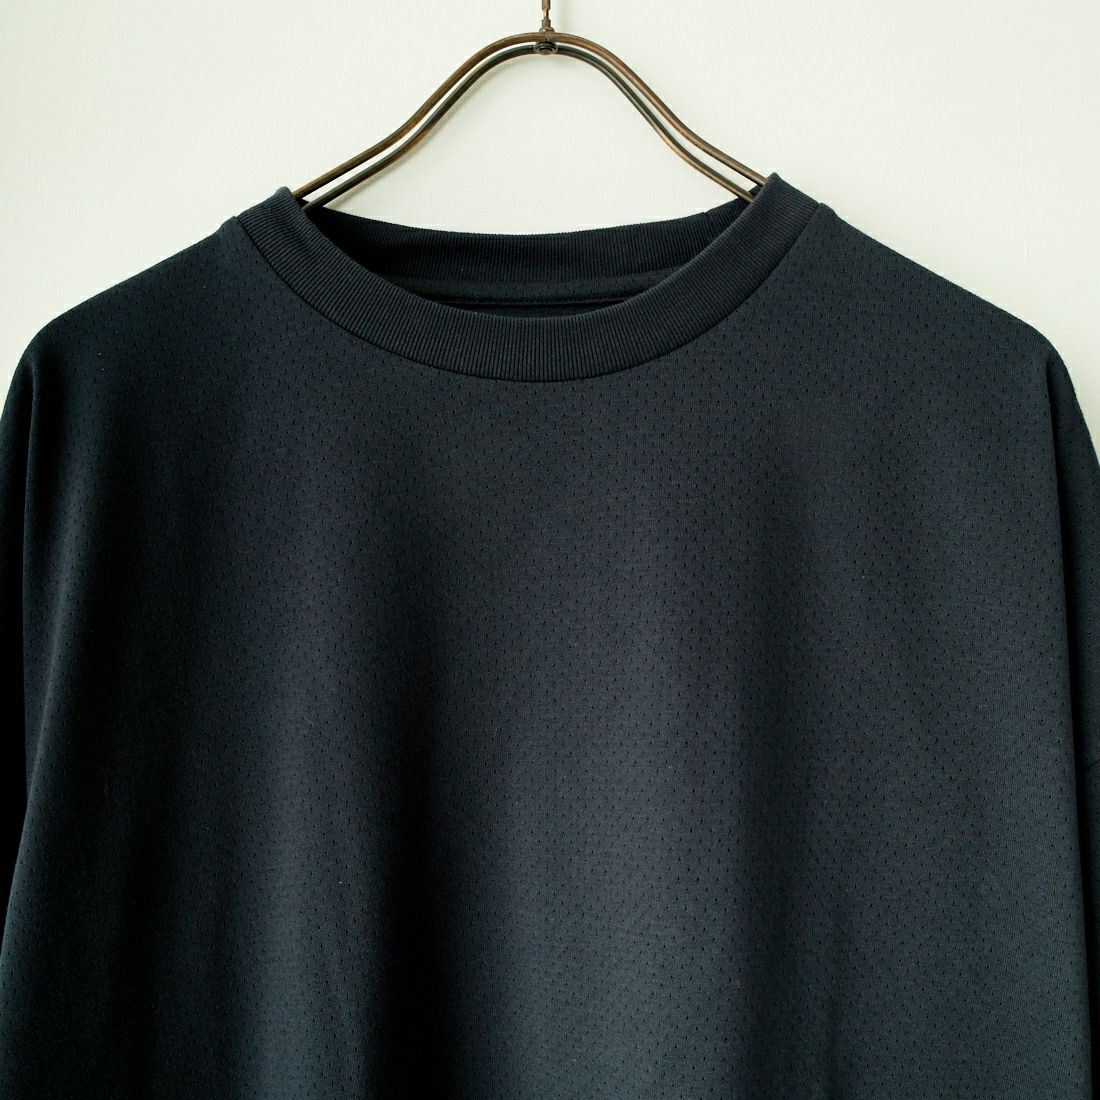 Jeans Factory Clothes [ジーンズファクトリークローズ] ドットエアリードローコードTシャツ [JFC-242-016] BLACK